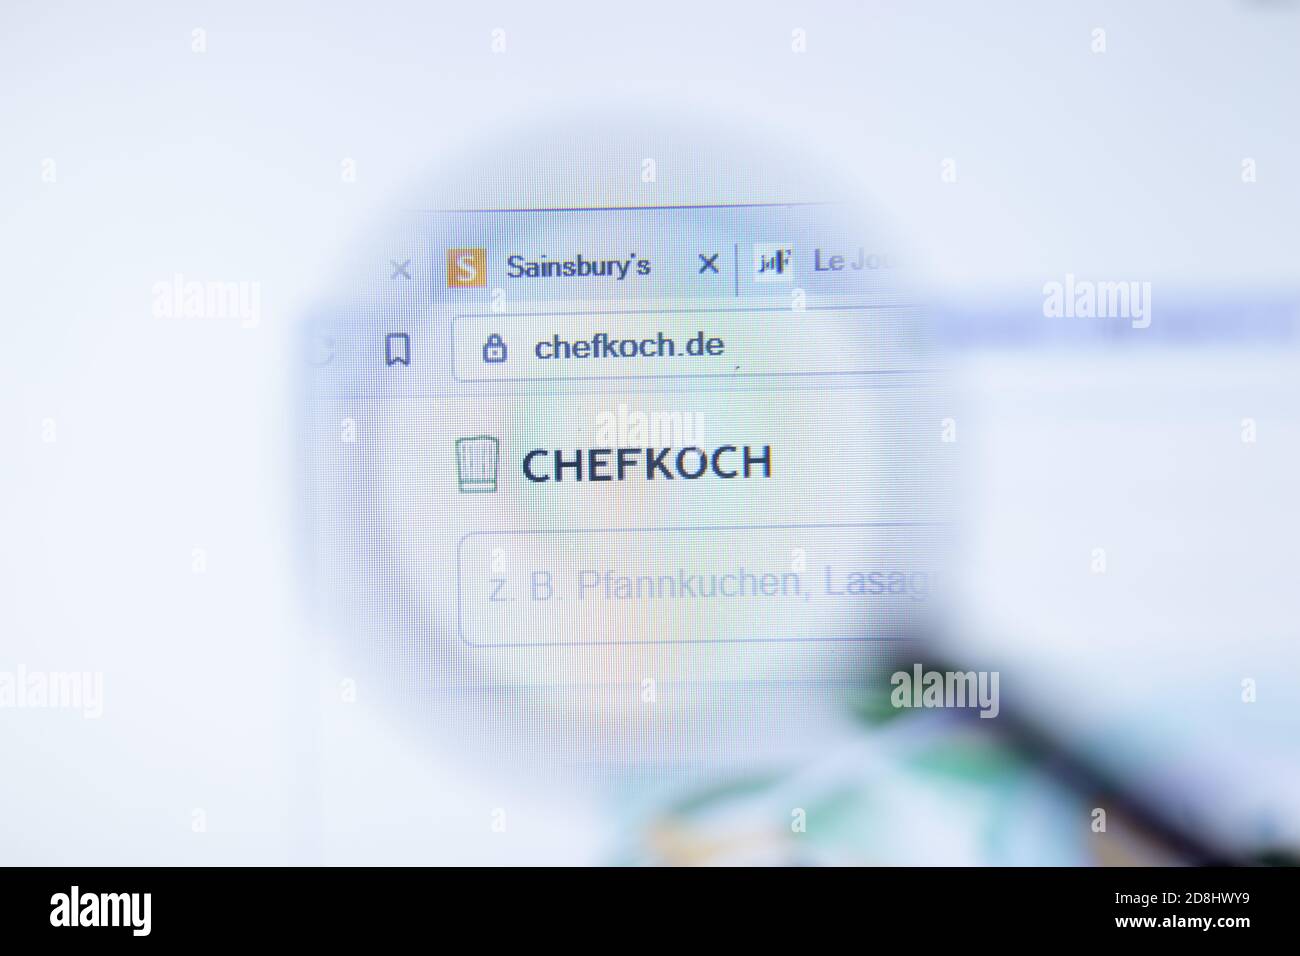 Nueva York, EE.UU. - 29 de septiembre de 2020: chefkoch.de Sitio web de la empresa Chefkoch con logotipo de primer plano, editorial ilustrativa Foto de stock